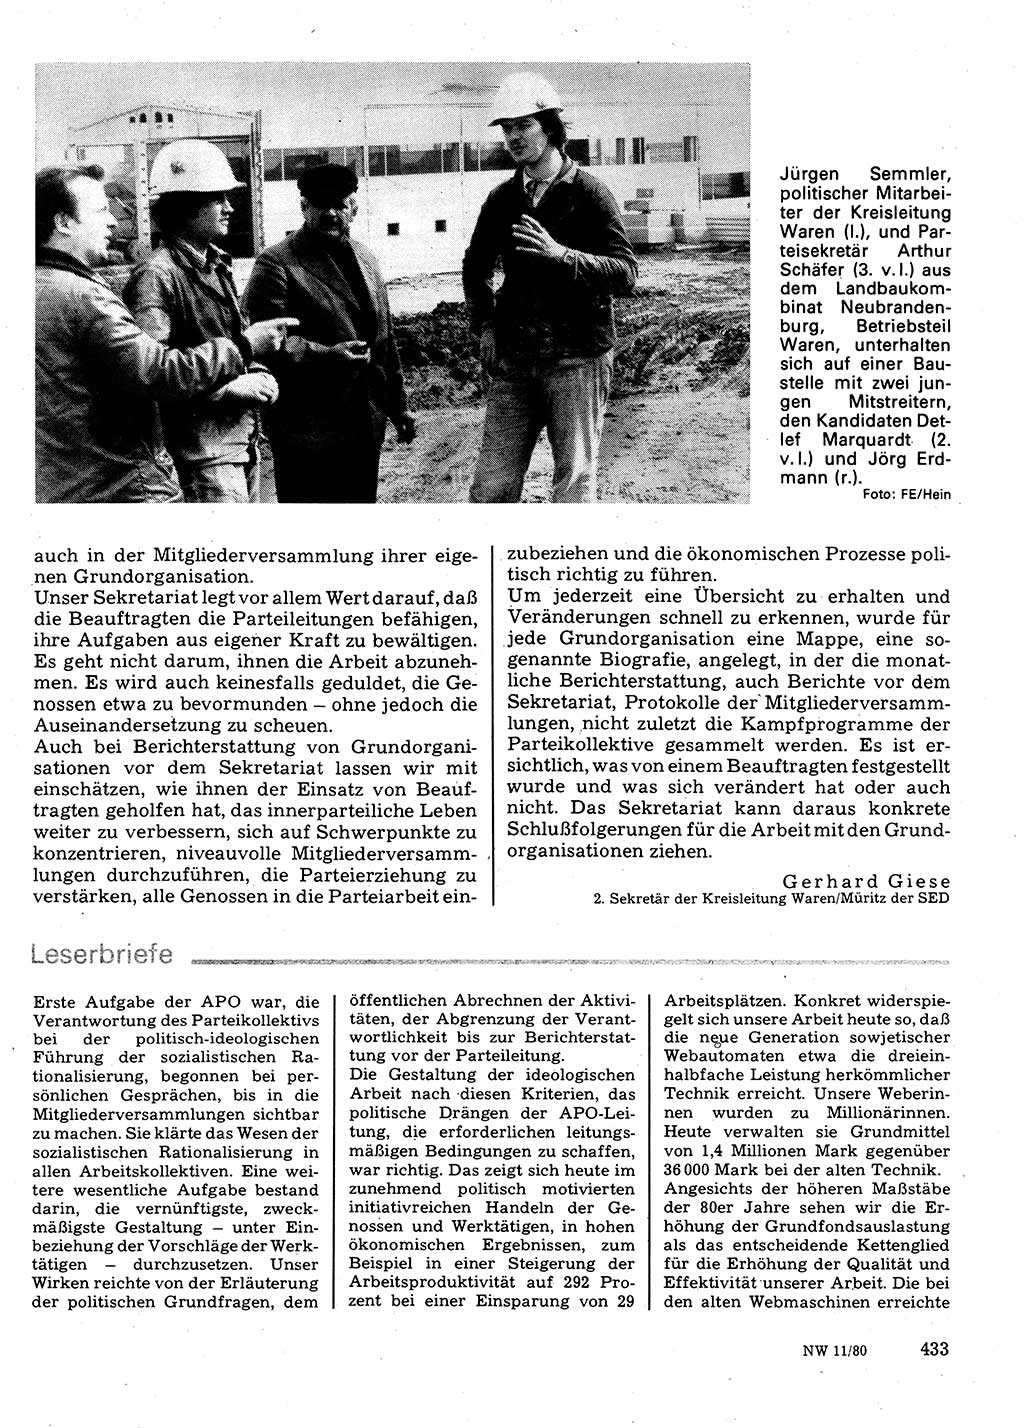 Neuer Weg (NW), Organ des Zentralkomitees (ZK) der SED (Sozialistische Einheitspartei Deutschlands) für Fragen des Parteilebens, 35. Jahrgang [Deutsche Demokratische Republik (DDR)] 1980, Seite 433 (NW ZK SED DDR 1980, S. 433)